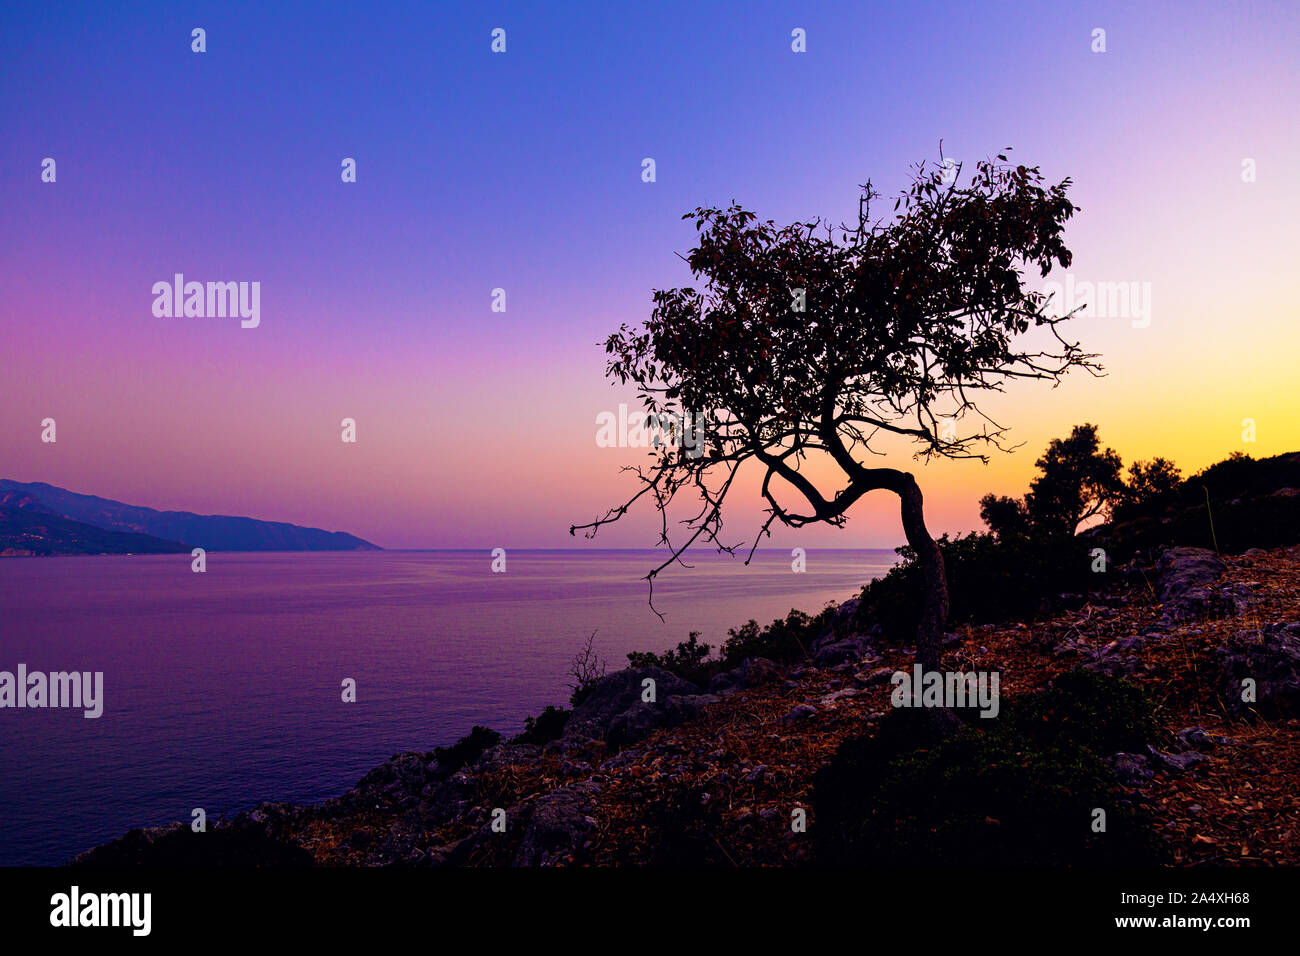 Sunset at Gemiler Island, Turkish Riviera, Turkey Stock Photo